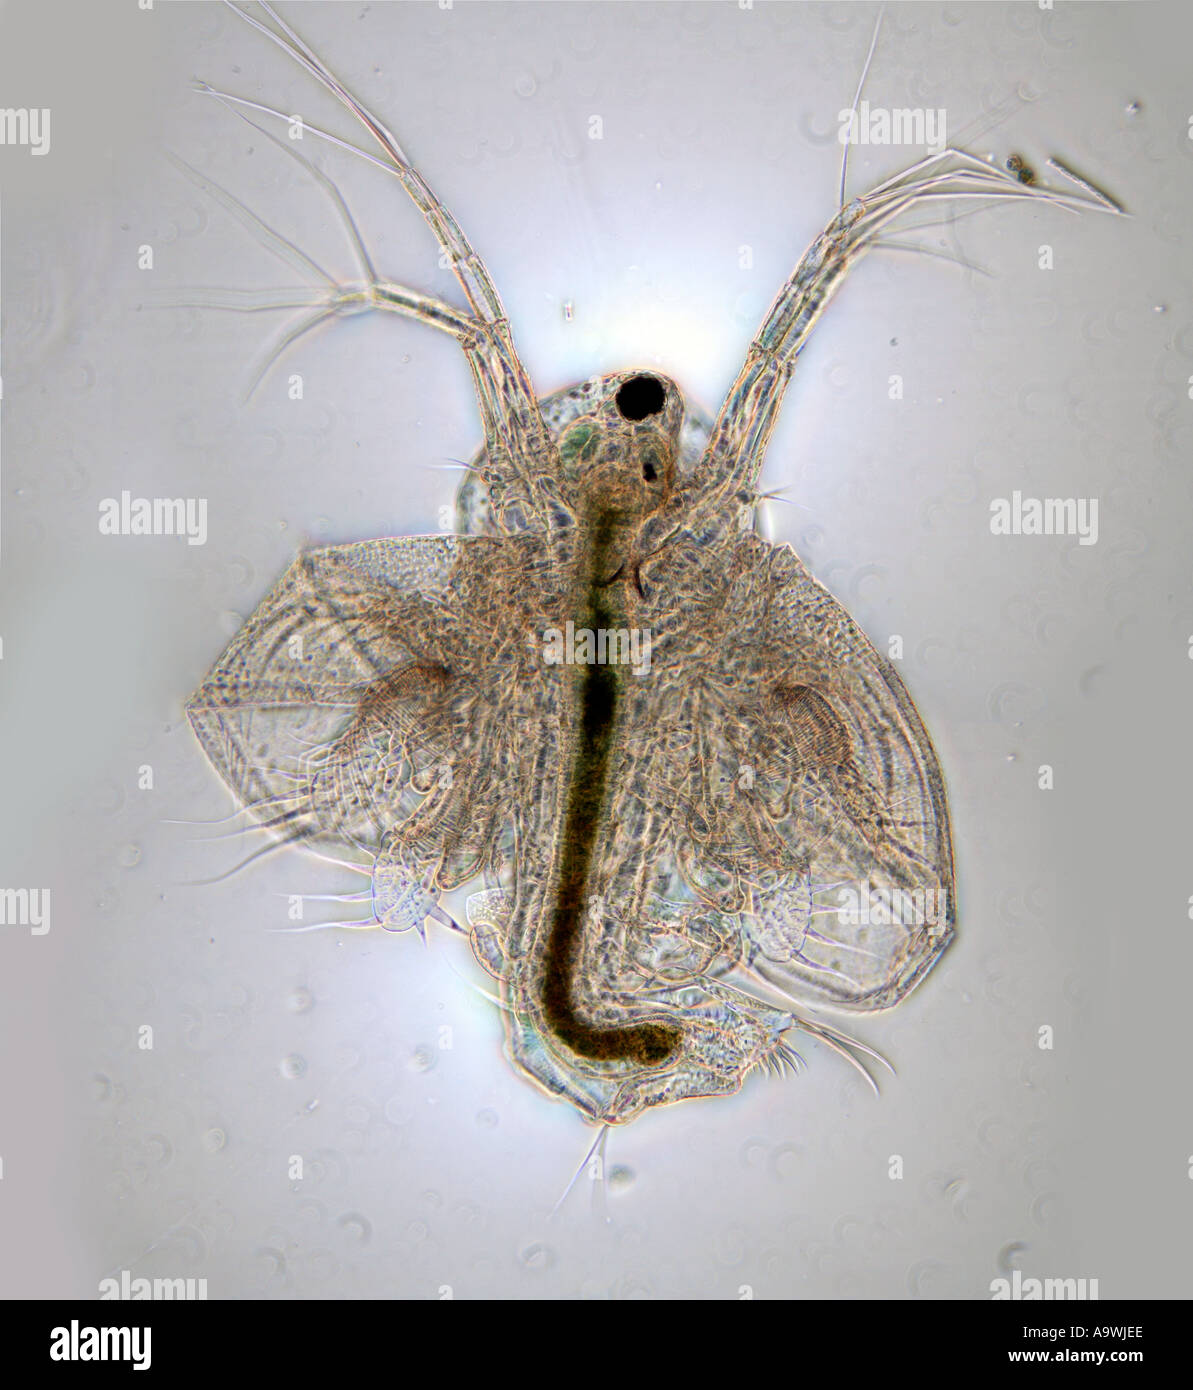 Larve de copépodes photomicrographie, contraste de phase fond blanc Banque D'Images